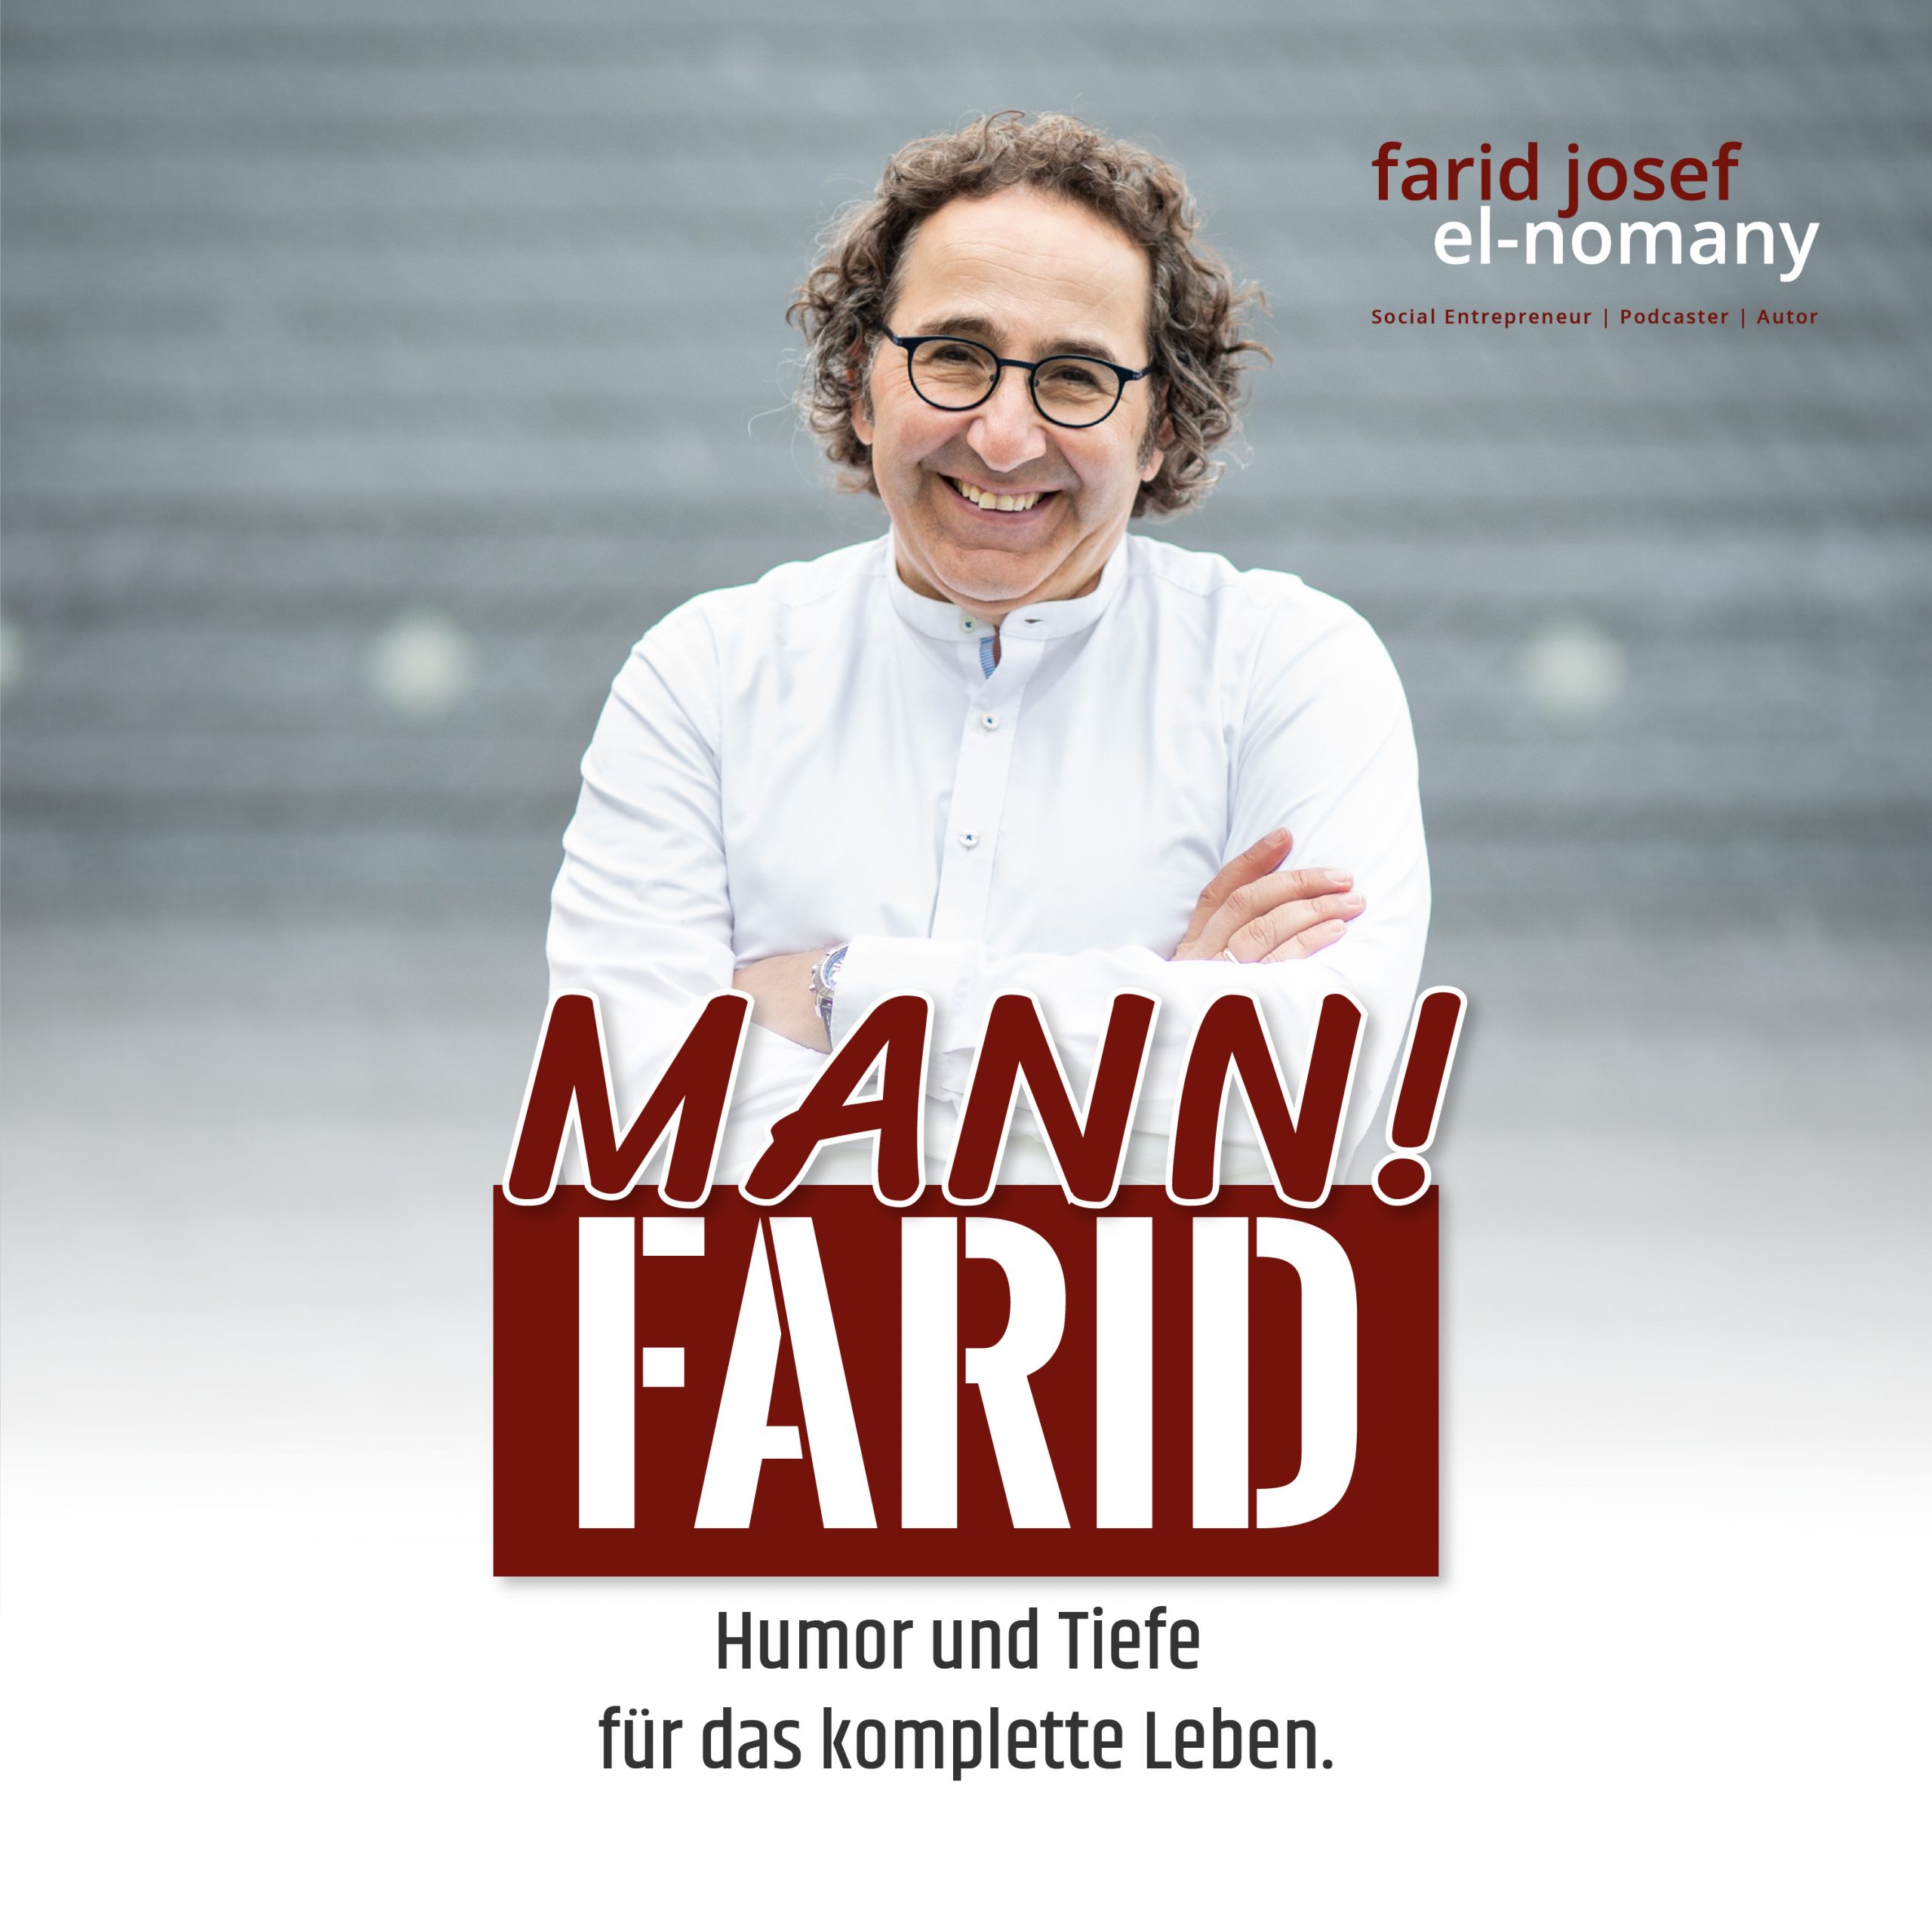 Mann! Farid Podcast #53 Selbstfürsorge - Sorge für Dich selbst, dann Mann geht es Dir gut!